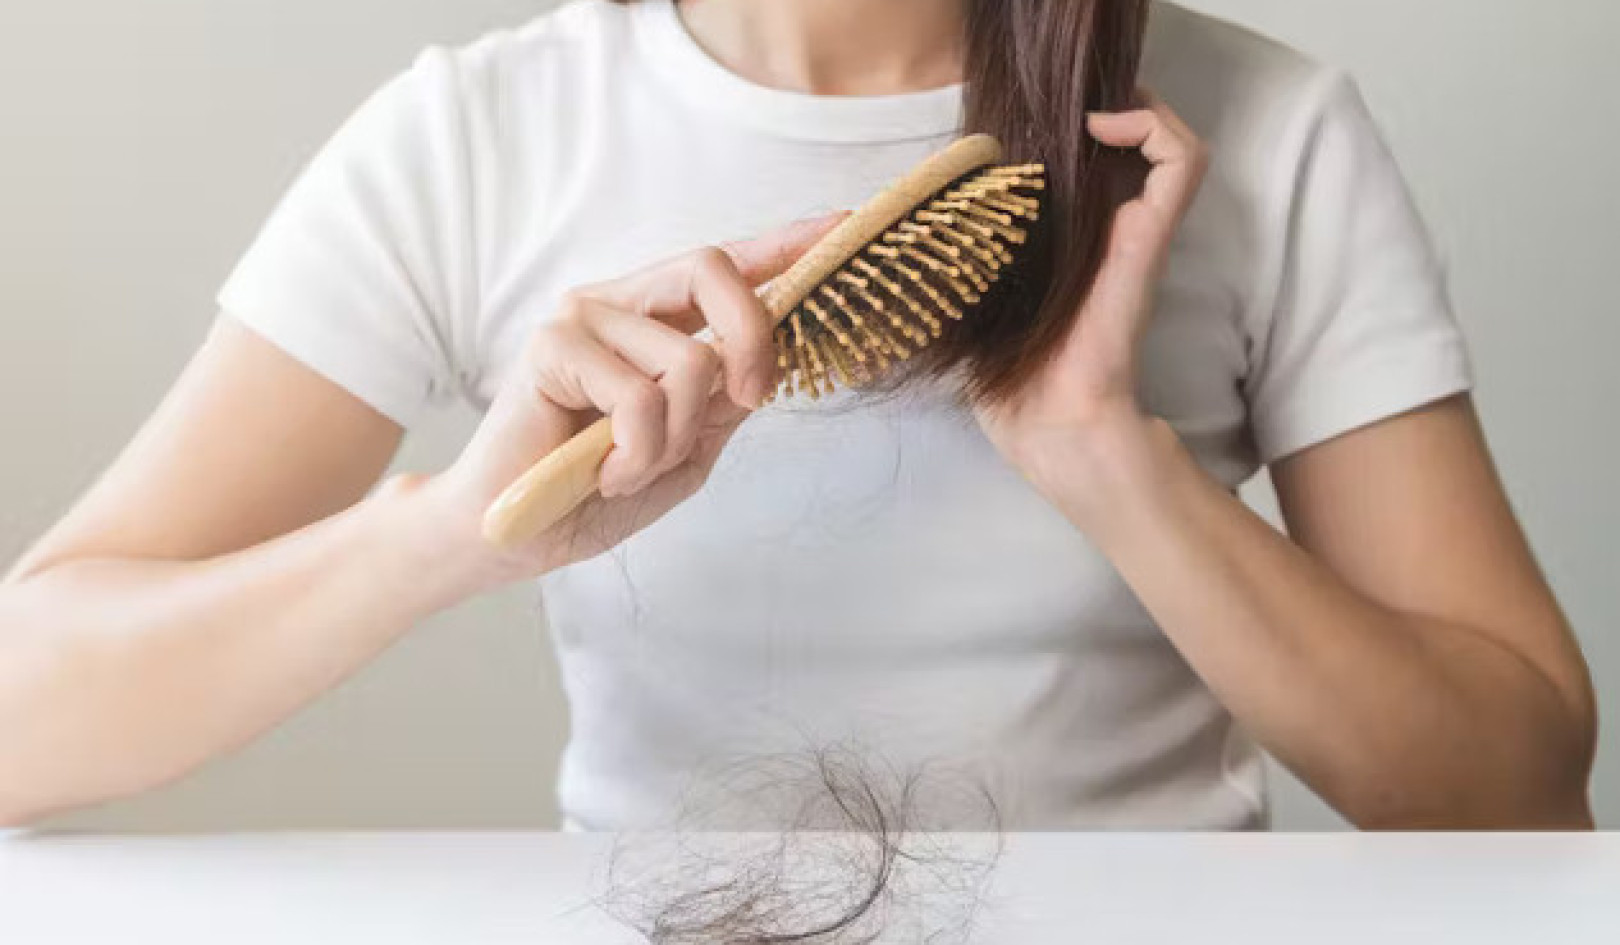 پوشیدہ صحت سے پتہ چلتا ہے کہ آپ کے بال آپ کو بھیج رہے ہیں۔